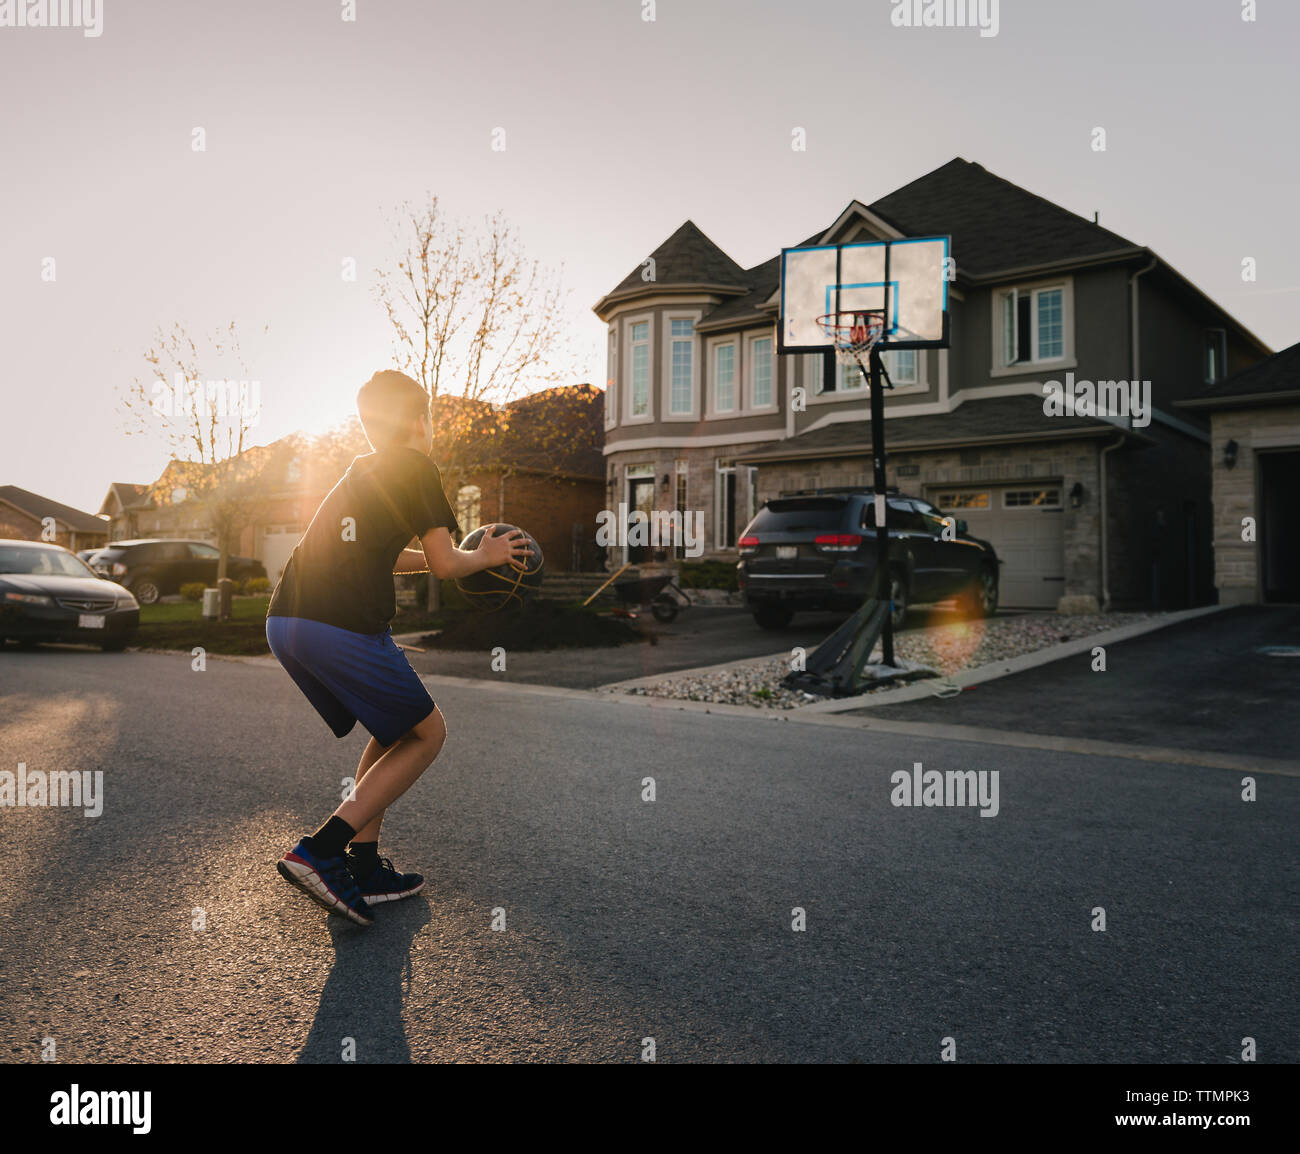 Toute la longueur du garçon jouant au basket-ball sur la route pendant le coucher du soleil Banque D'Images